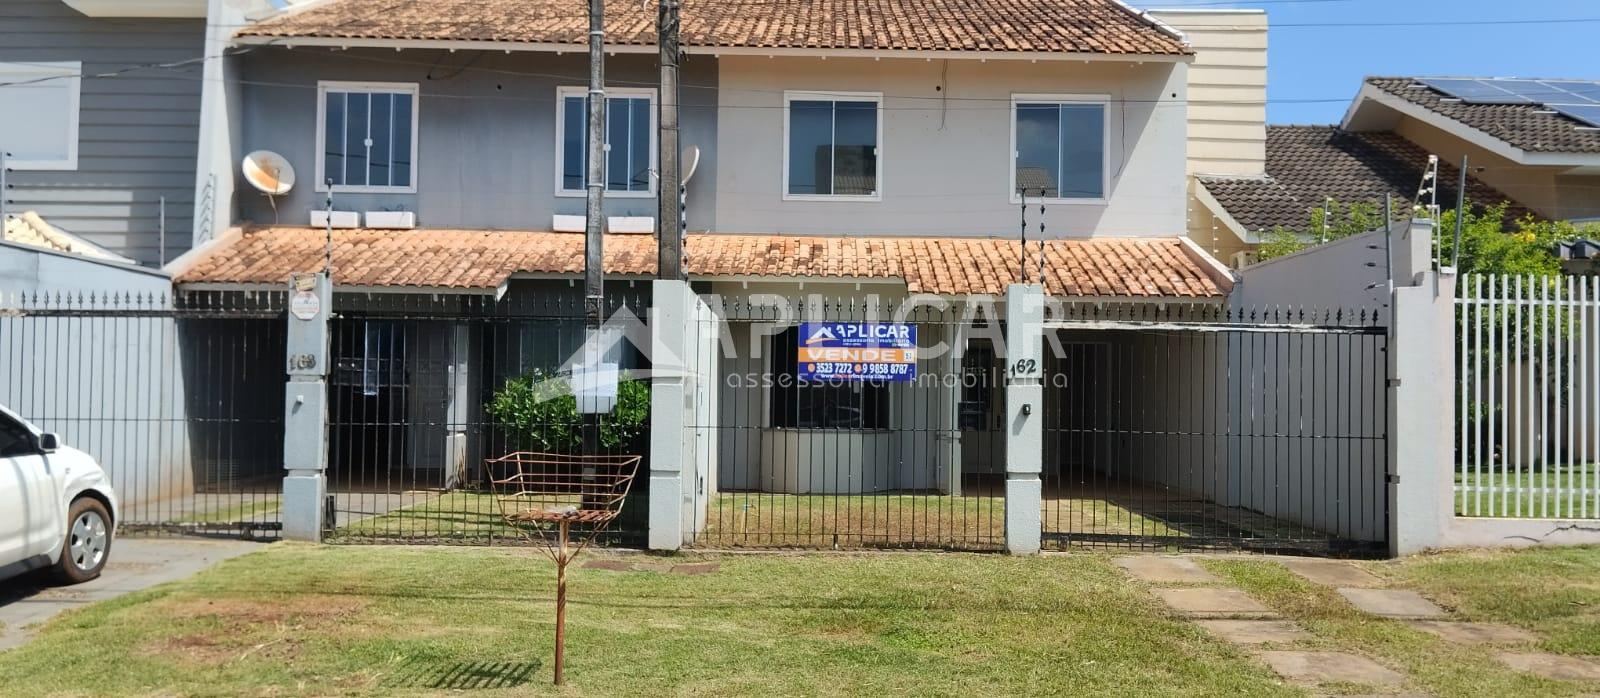 Sobrado à venda, Jardim Iguaçu, FOZ DO IGUACU - PR